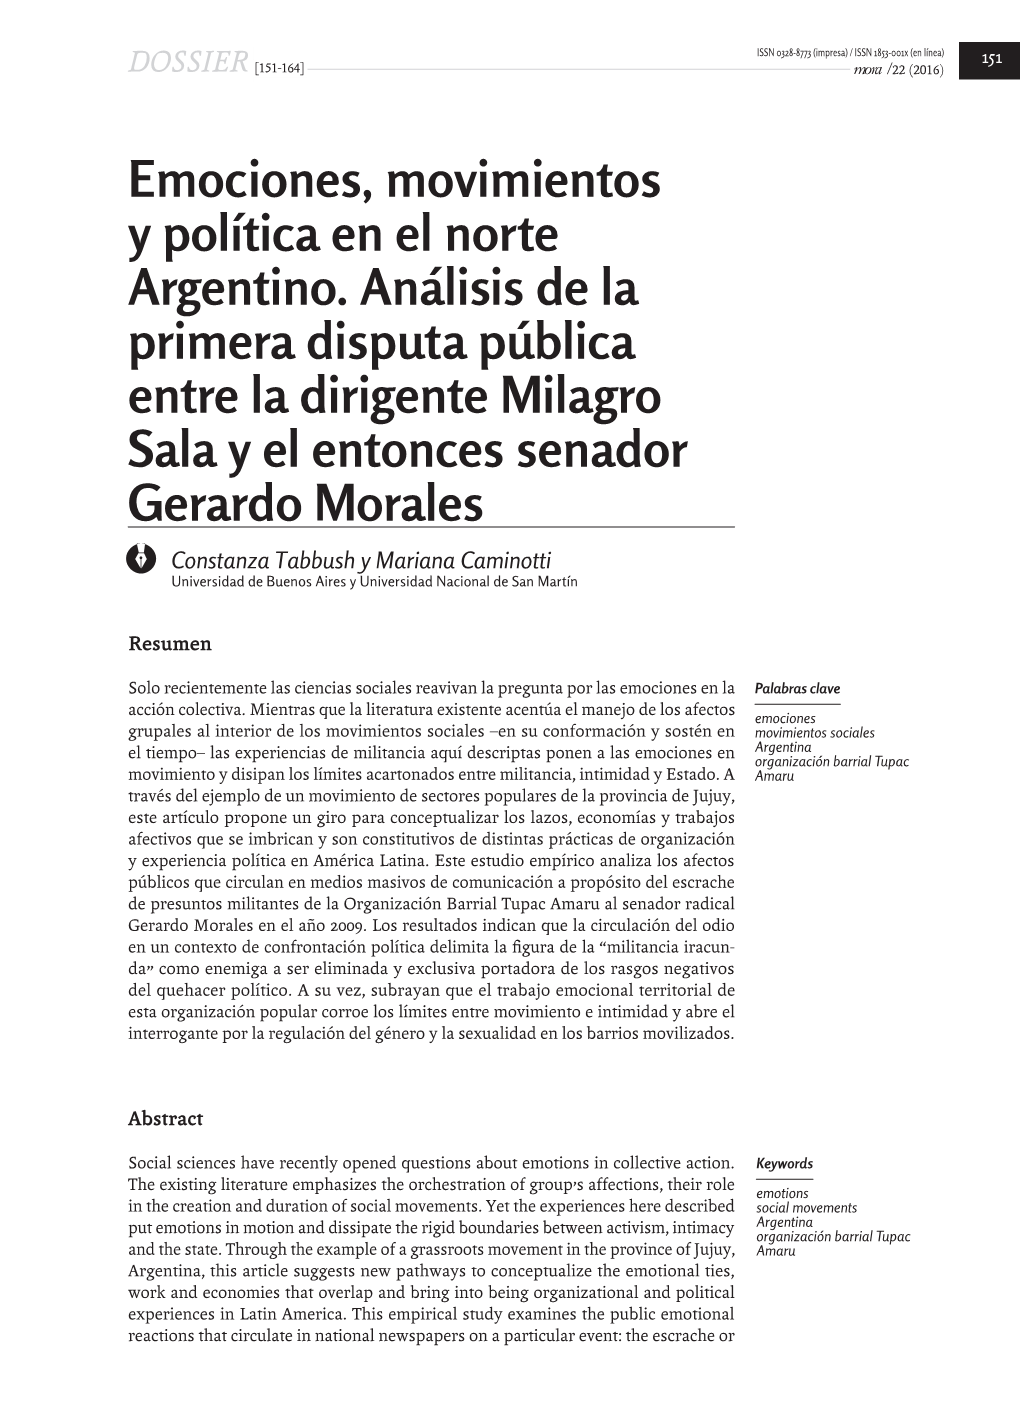 Emociones, Movimientos Y Política En El Norte Argentino. Análisis De La